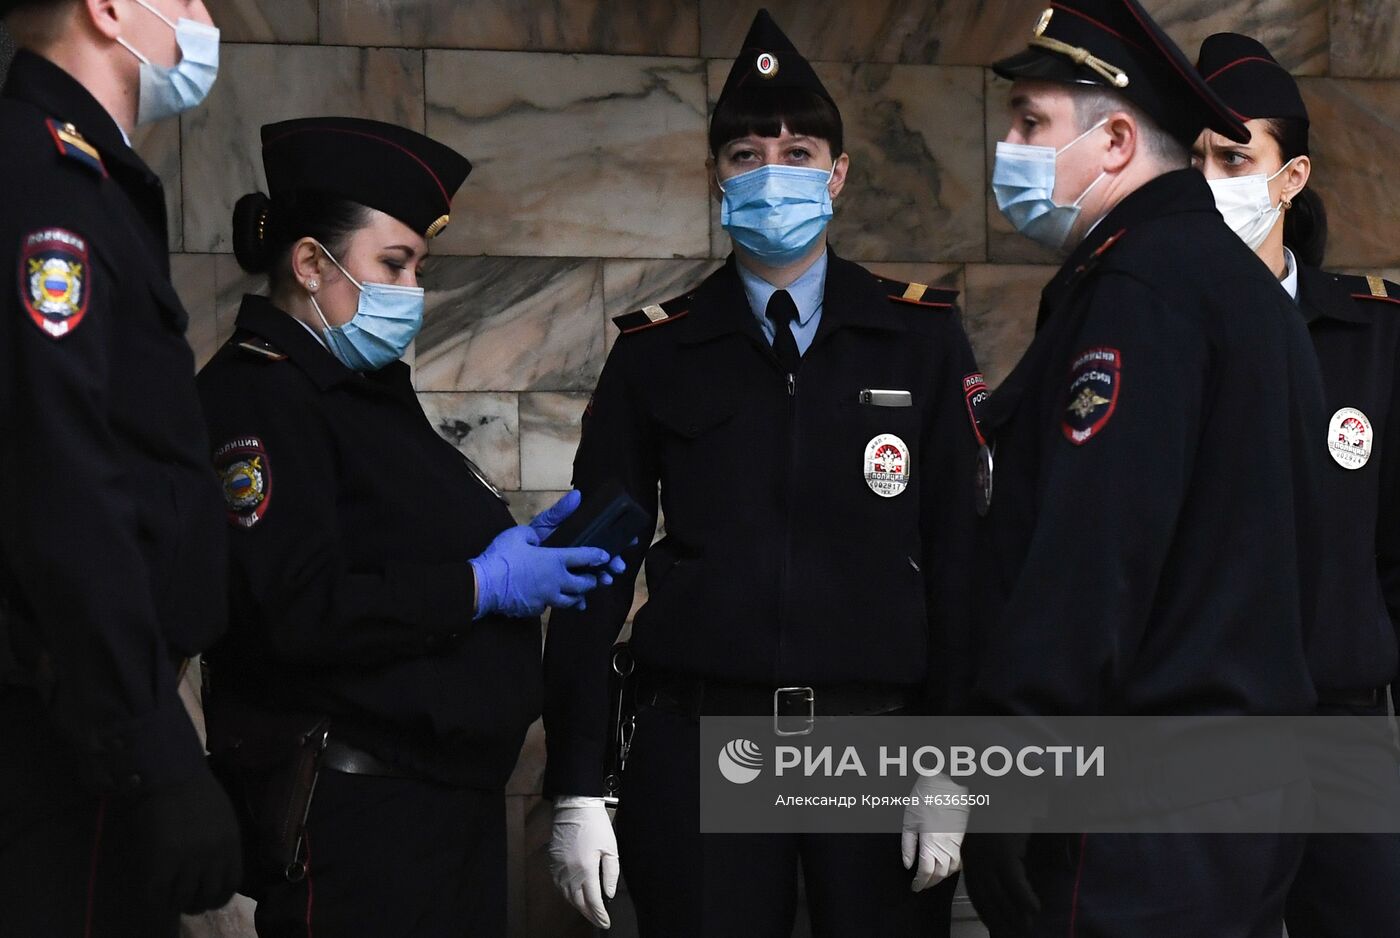 Рейд по контролю за соблюдением масочного режима в метрополитене Новосибирска